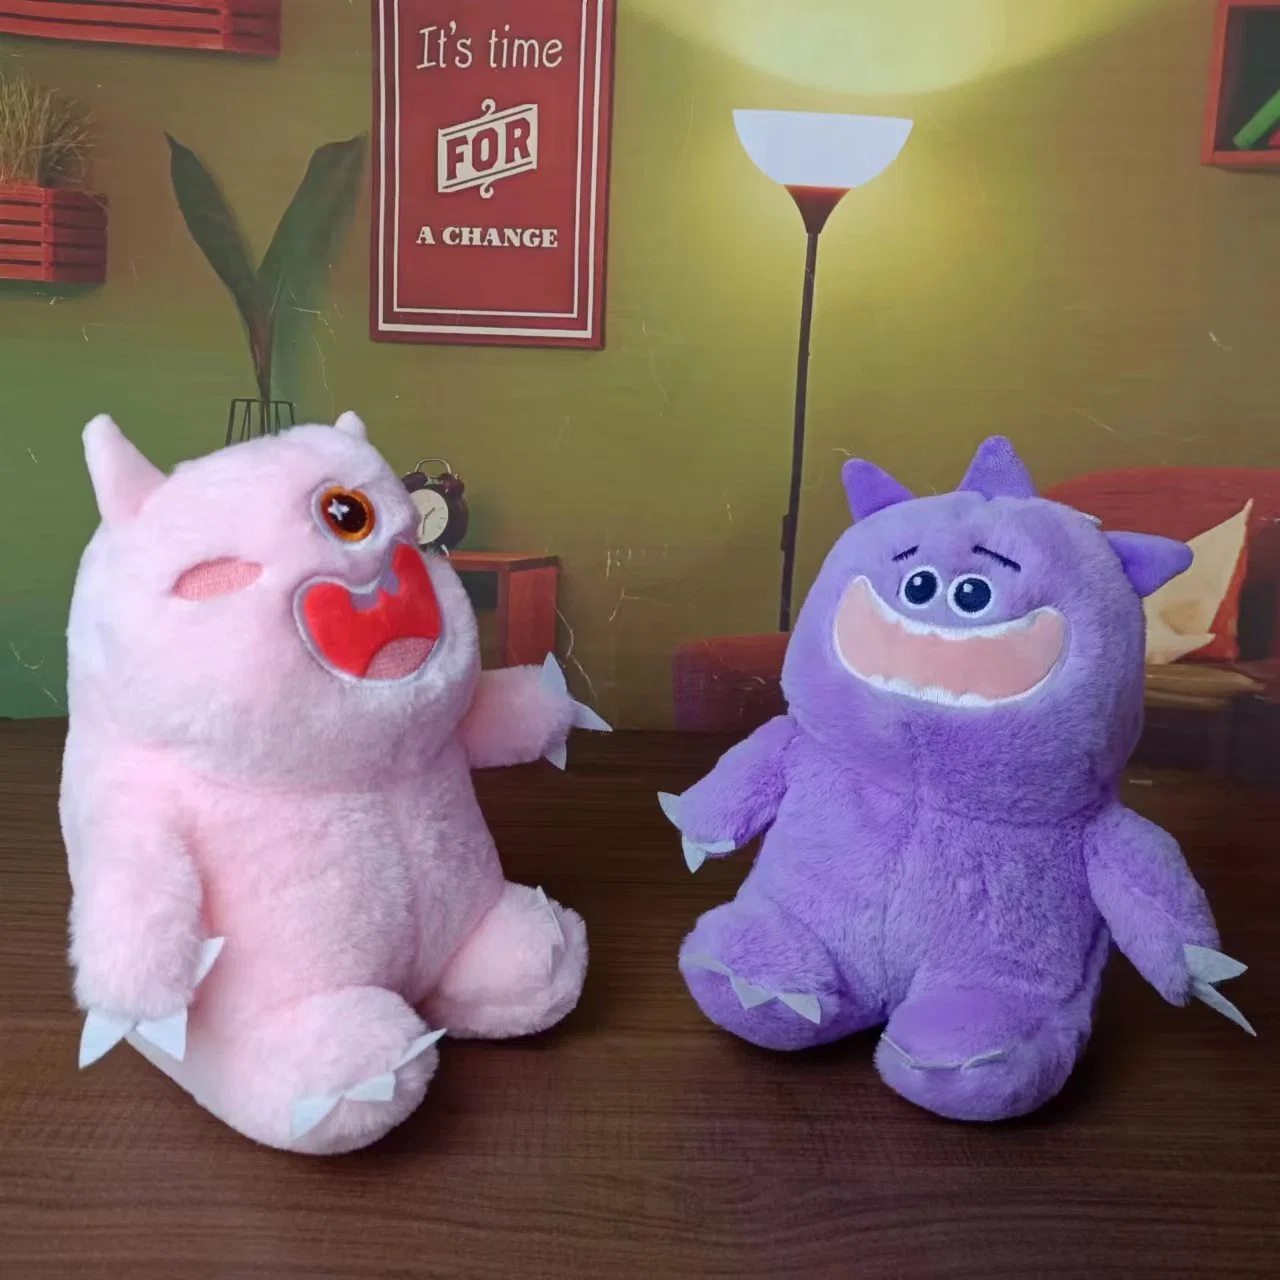 Vente chaude de jouets en peluche Bigmouth Monster - Fabricant personnalisé de peluches animales.